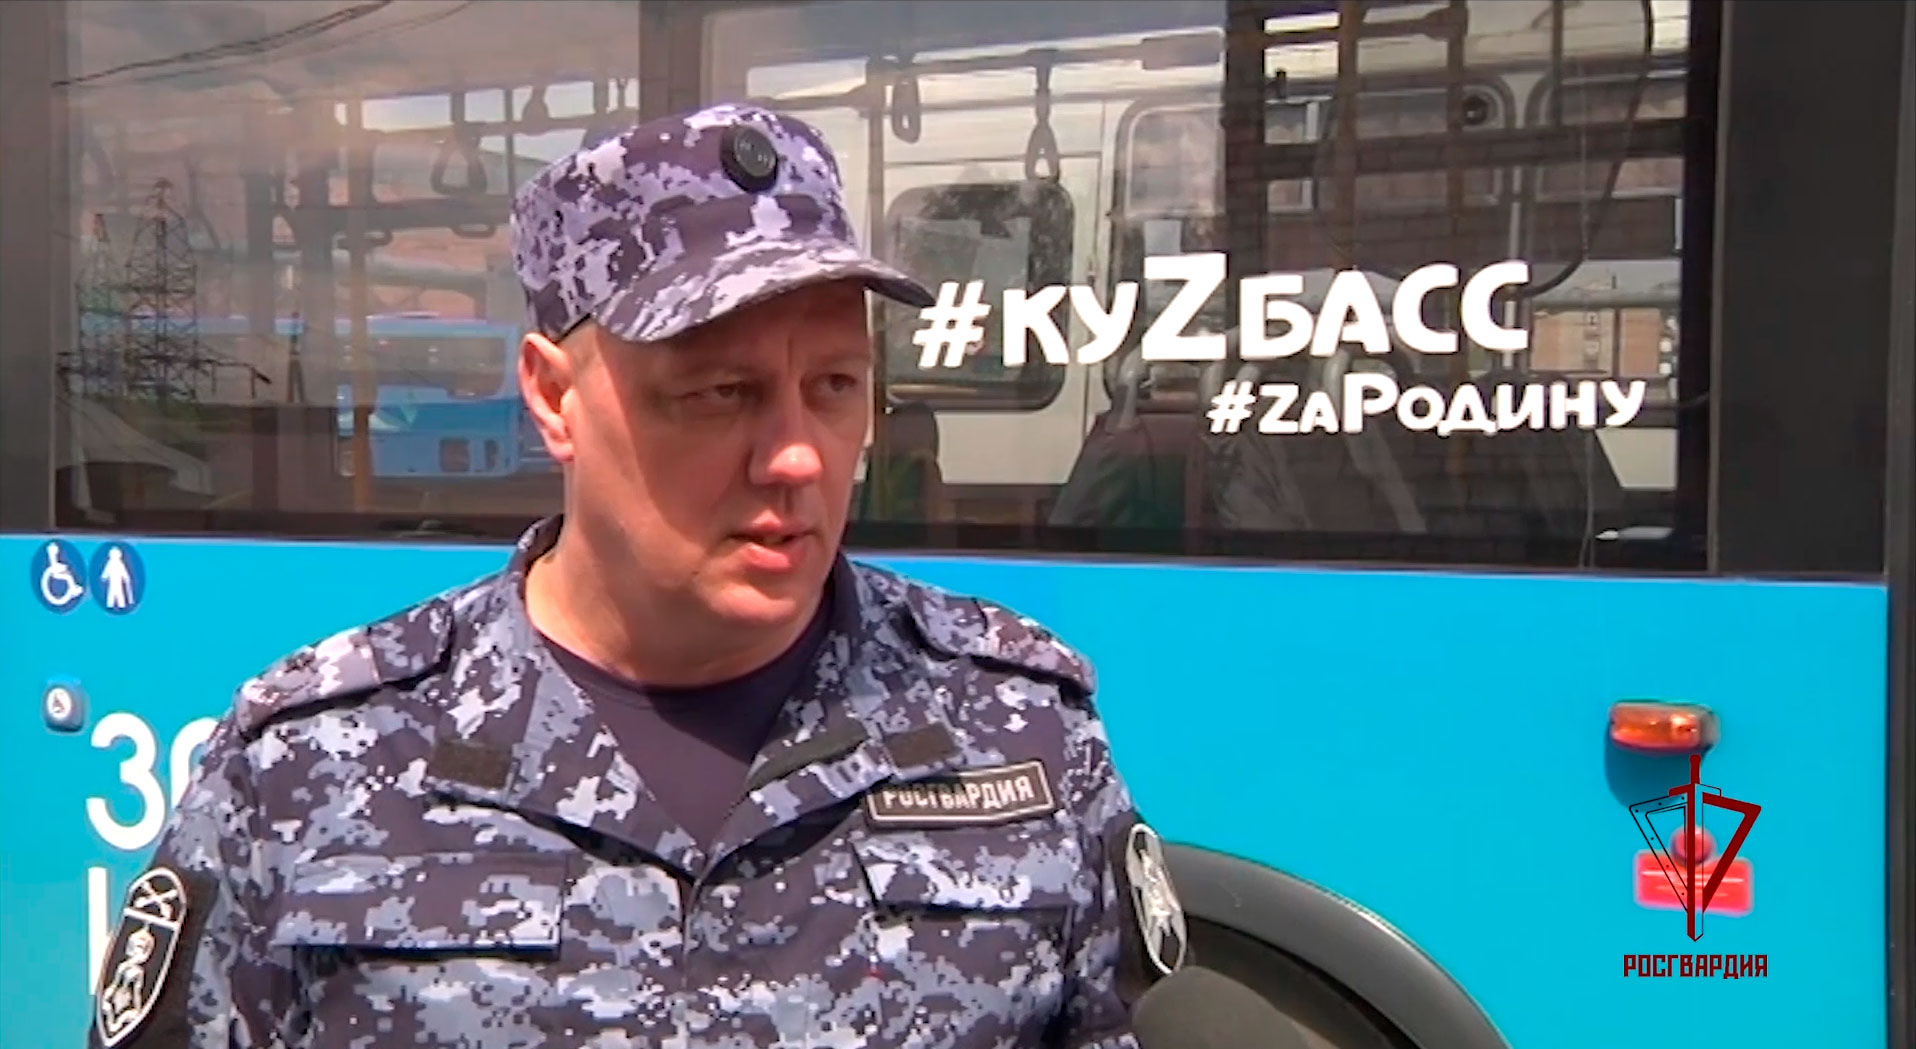 Росгвардия реализует пилотный проект по охране общественного транспорта в Кузбассе (видео)